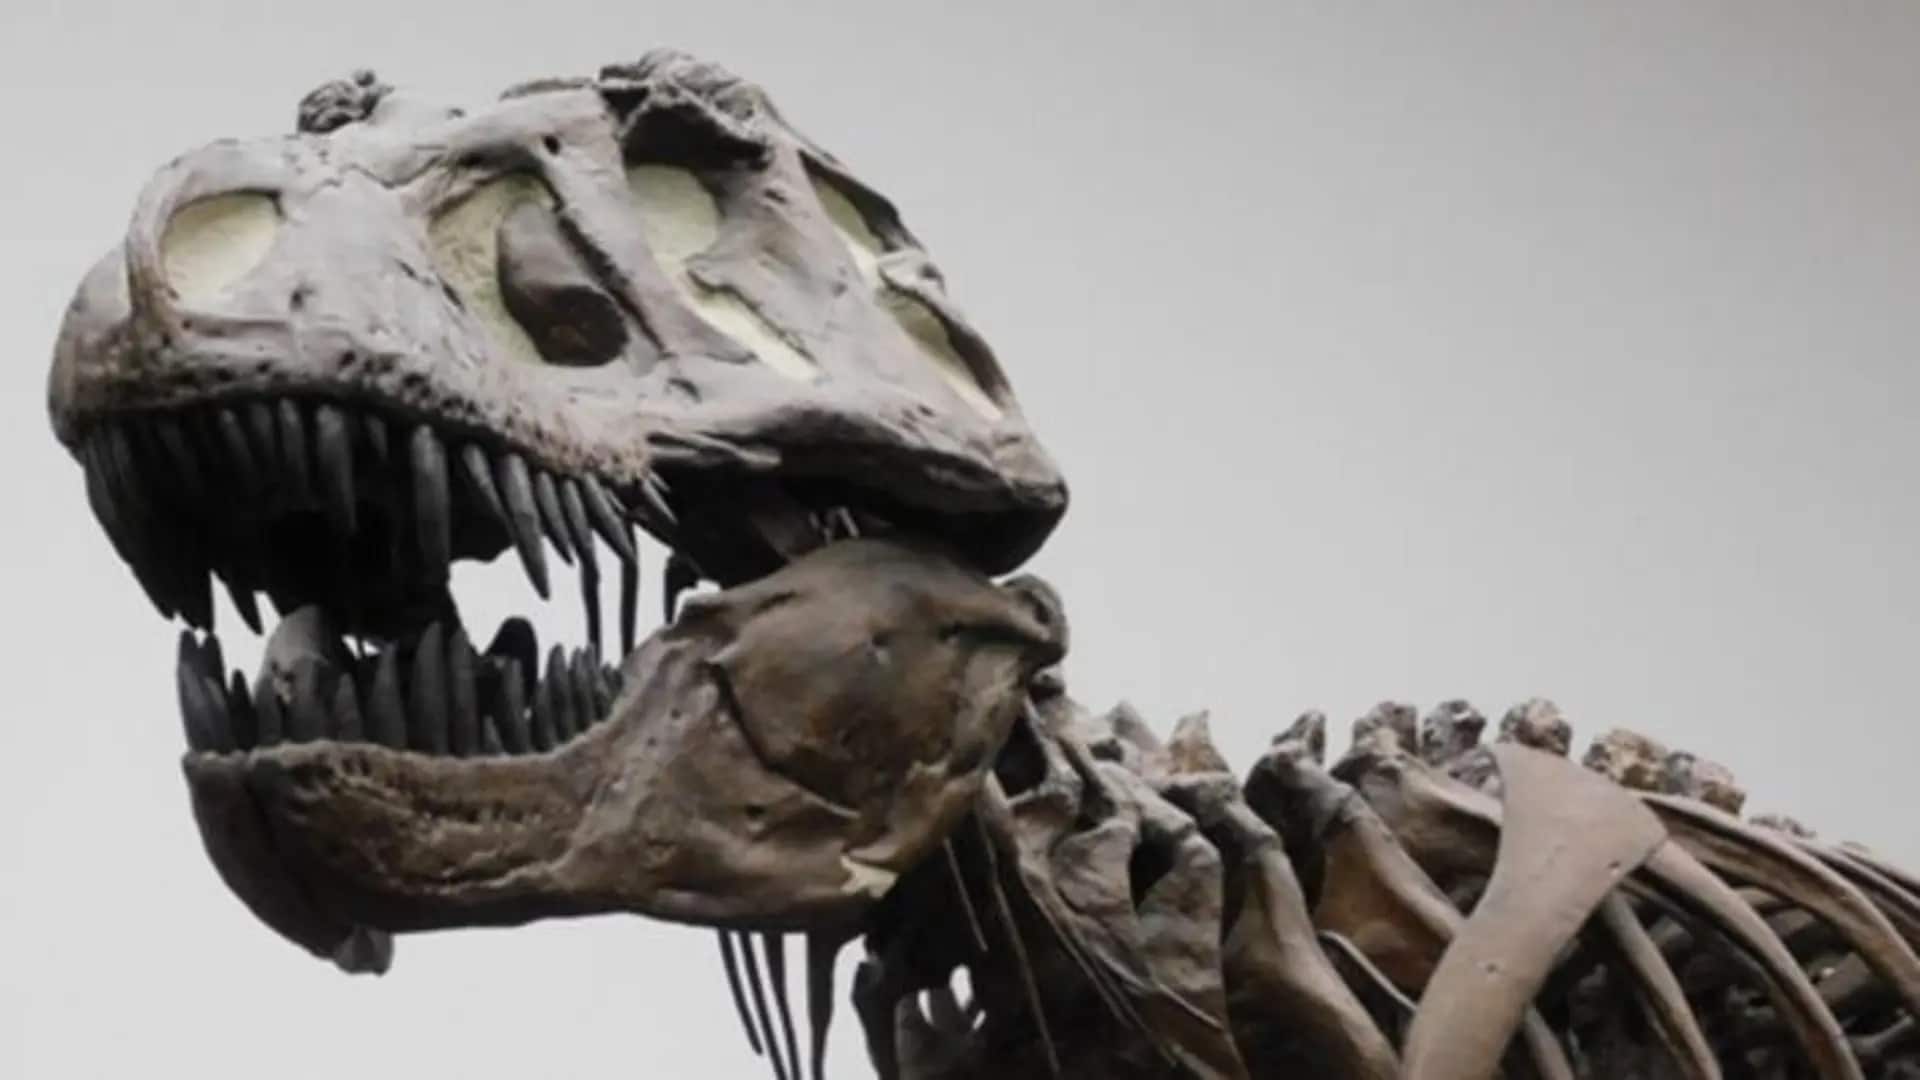 Скелет тираннозавра